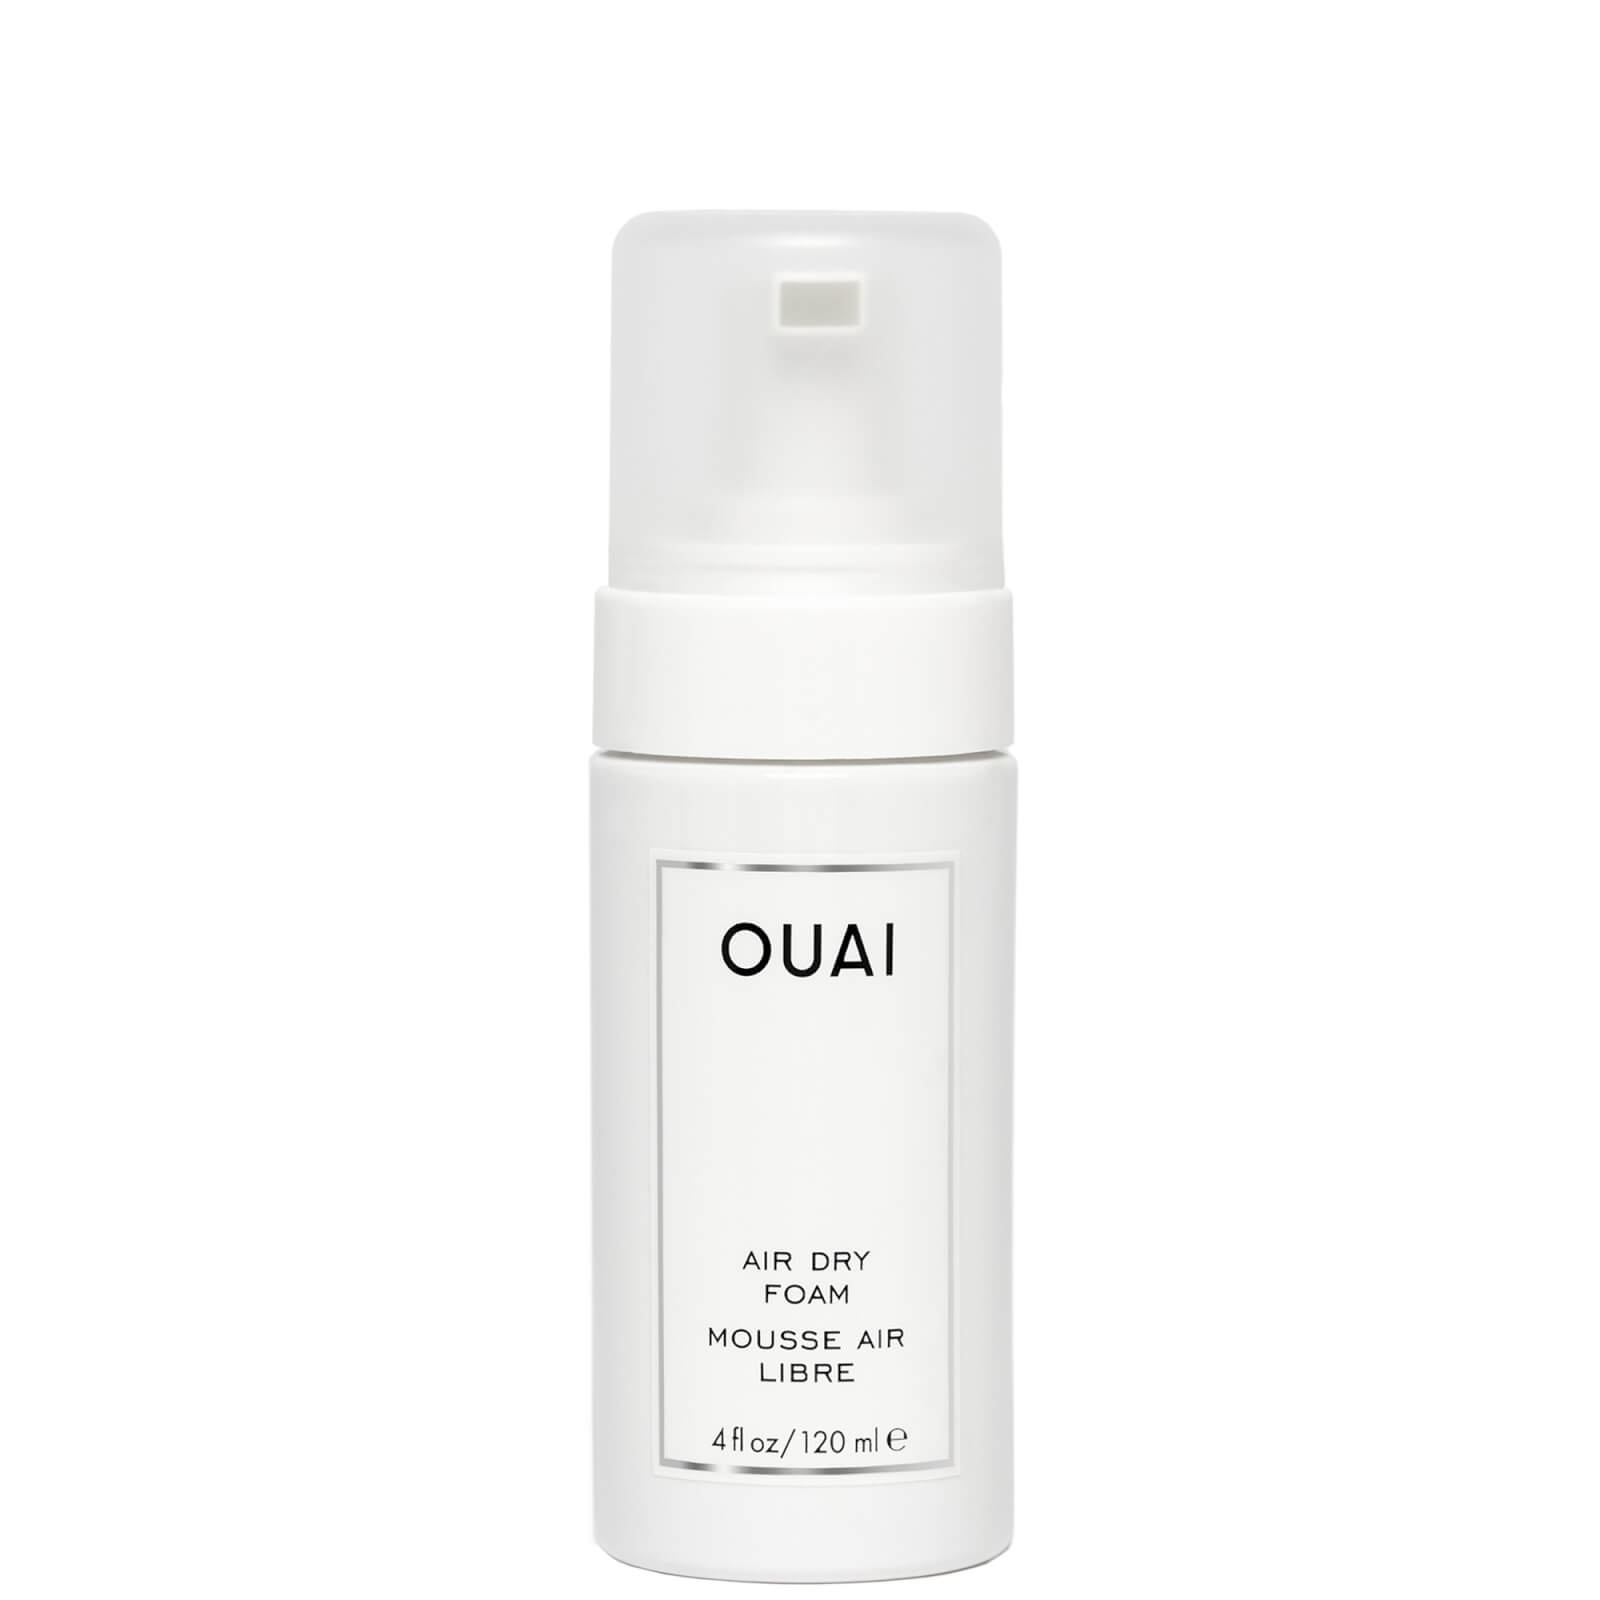 OUAI Air Dry Foam - 120ml product